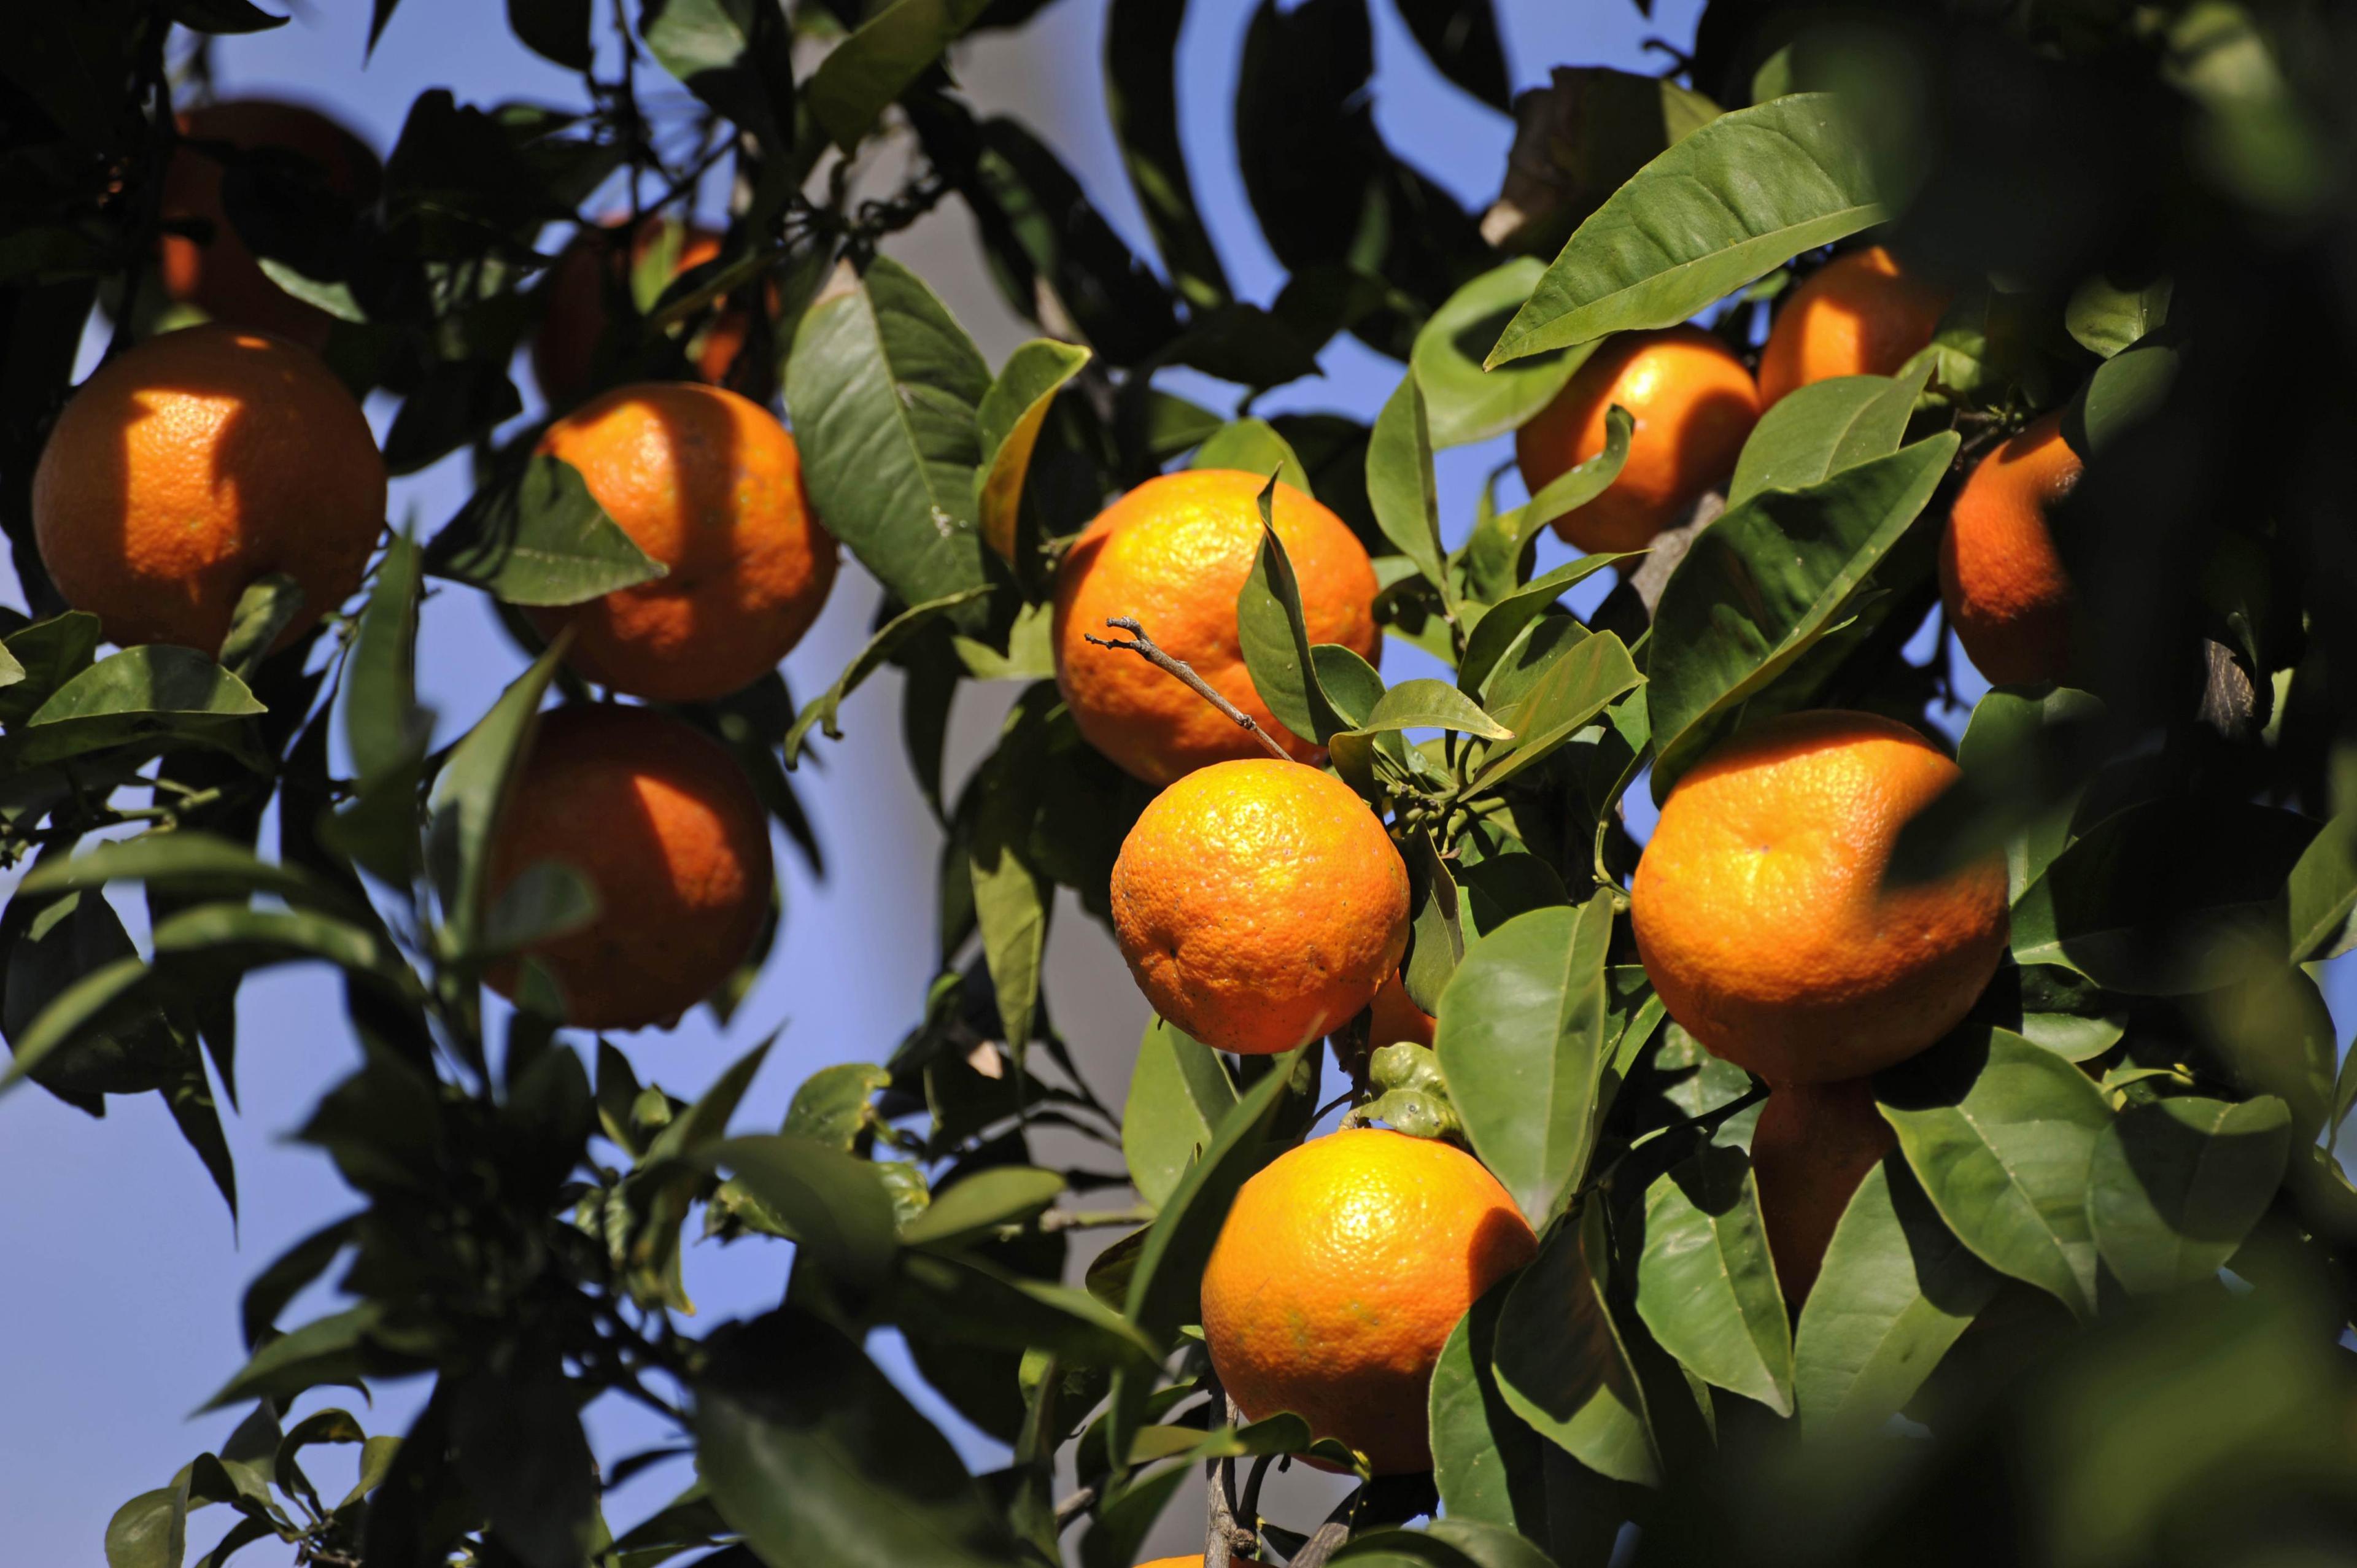 Att äta 16 kilo apelsiner (6 gram C-vitamin) skulle kunna minska din förkylning med en halv dag, men påverkar dina njurar hårt och ökar risken att få njursten, eller gråstarr. (Foto: Odd Andersen/AFP/Getty Images)